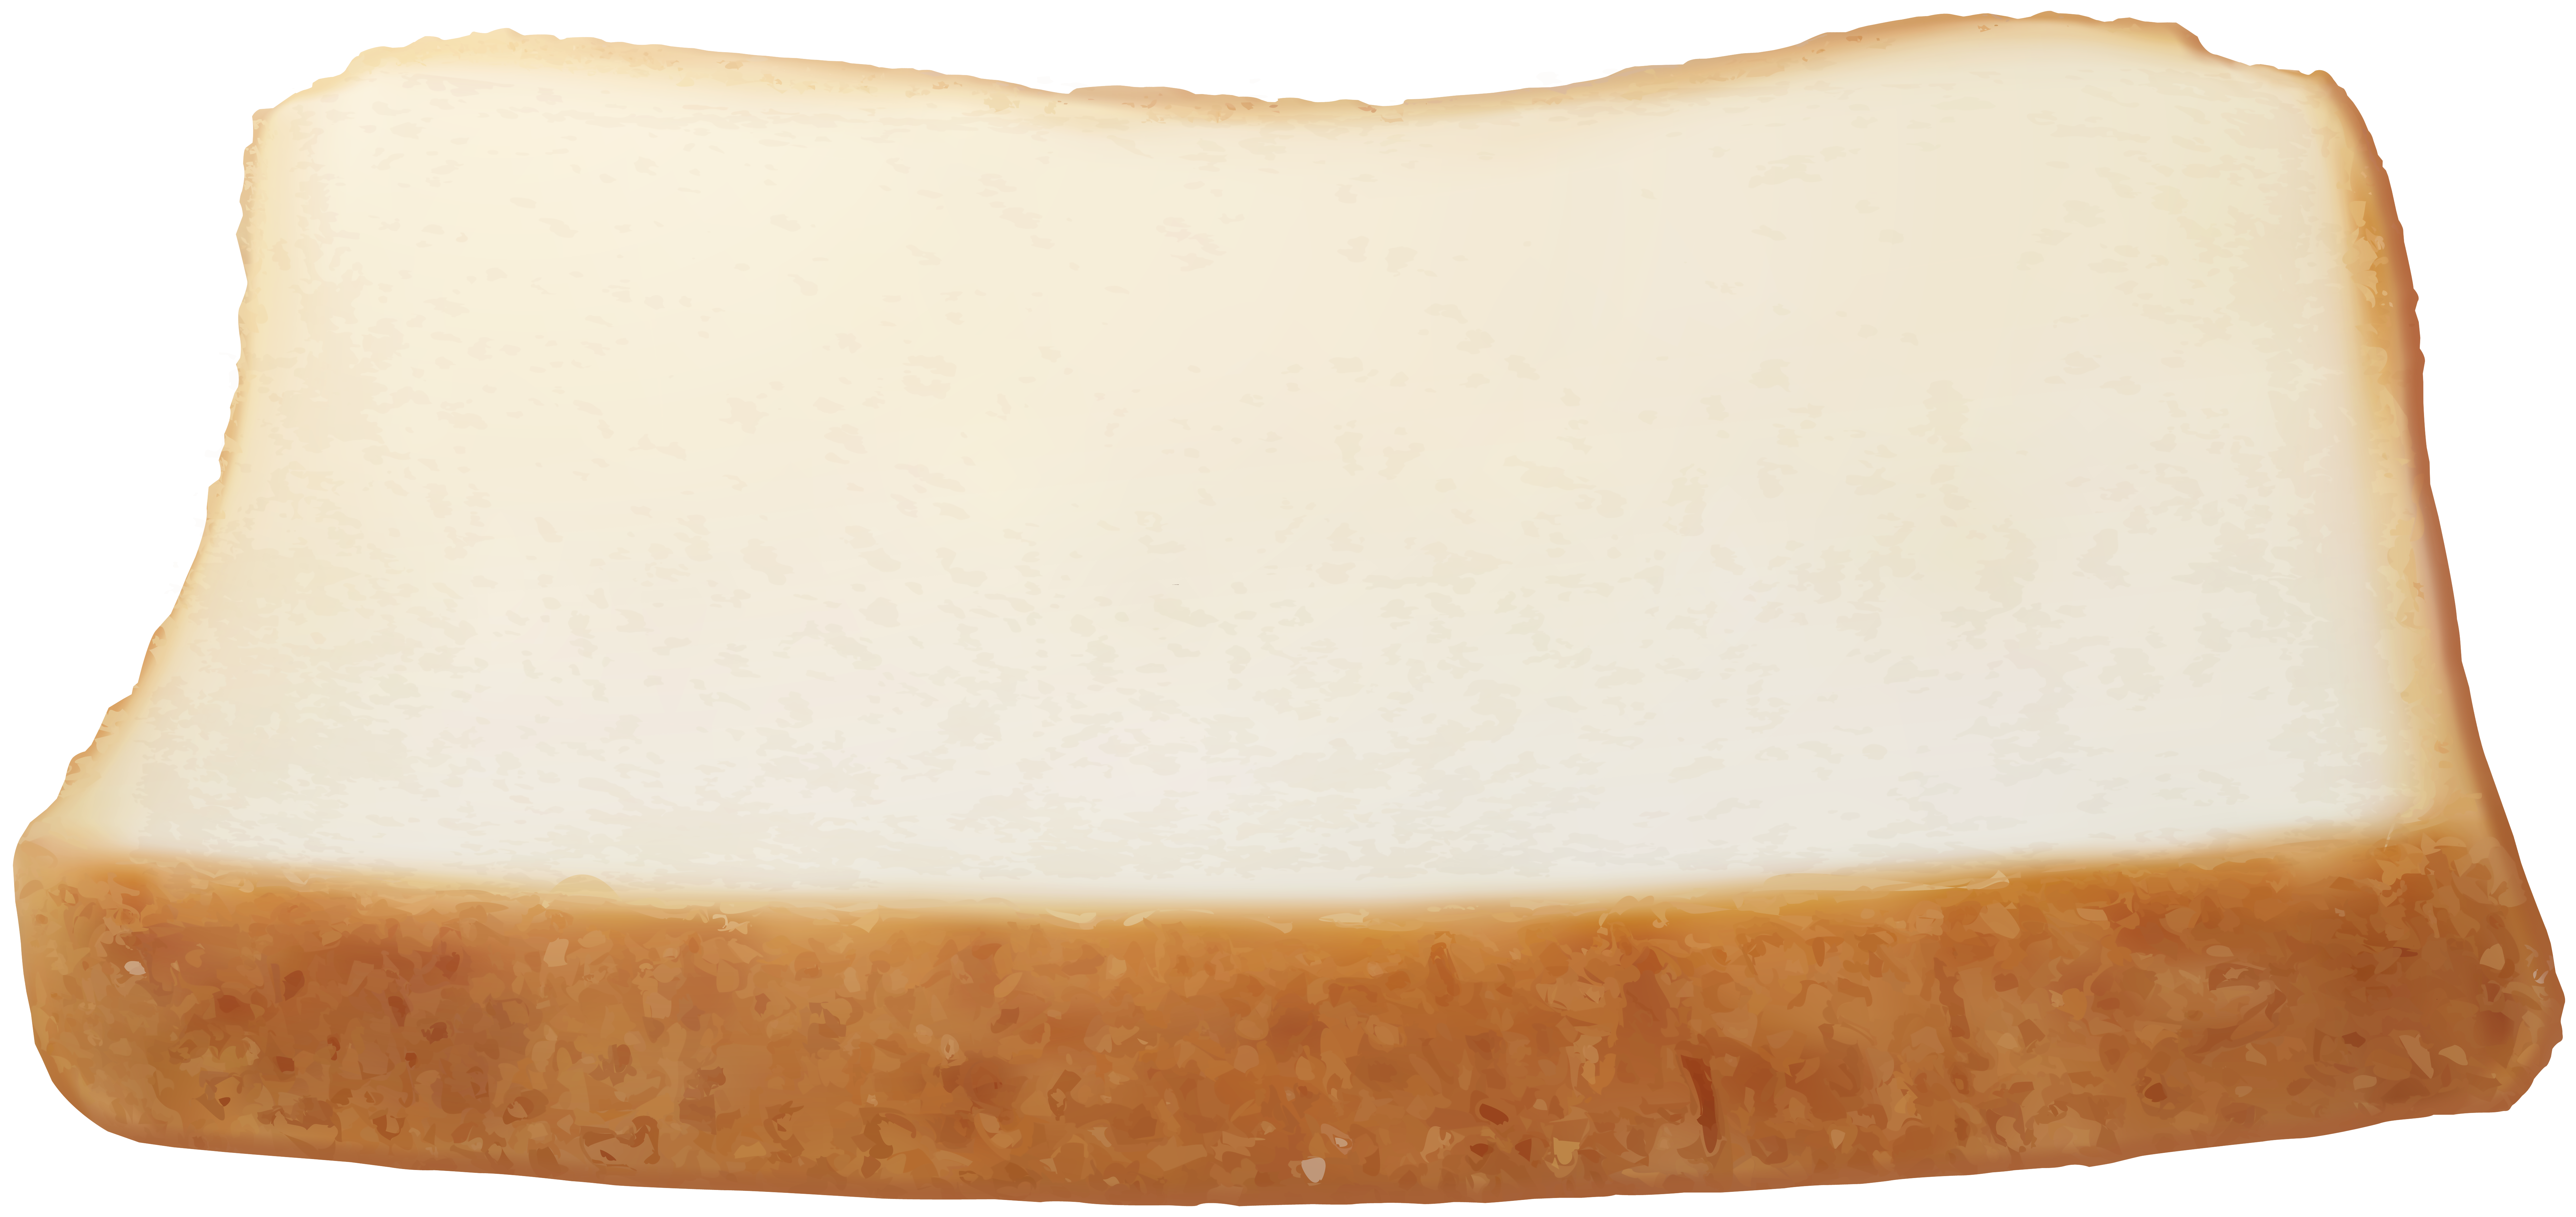 clipart bread slice